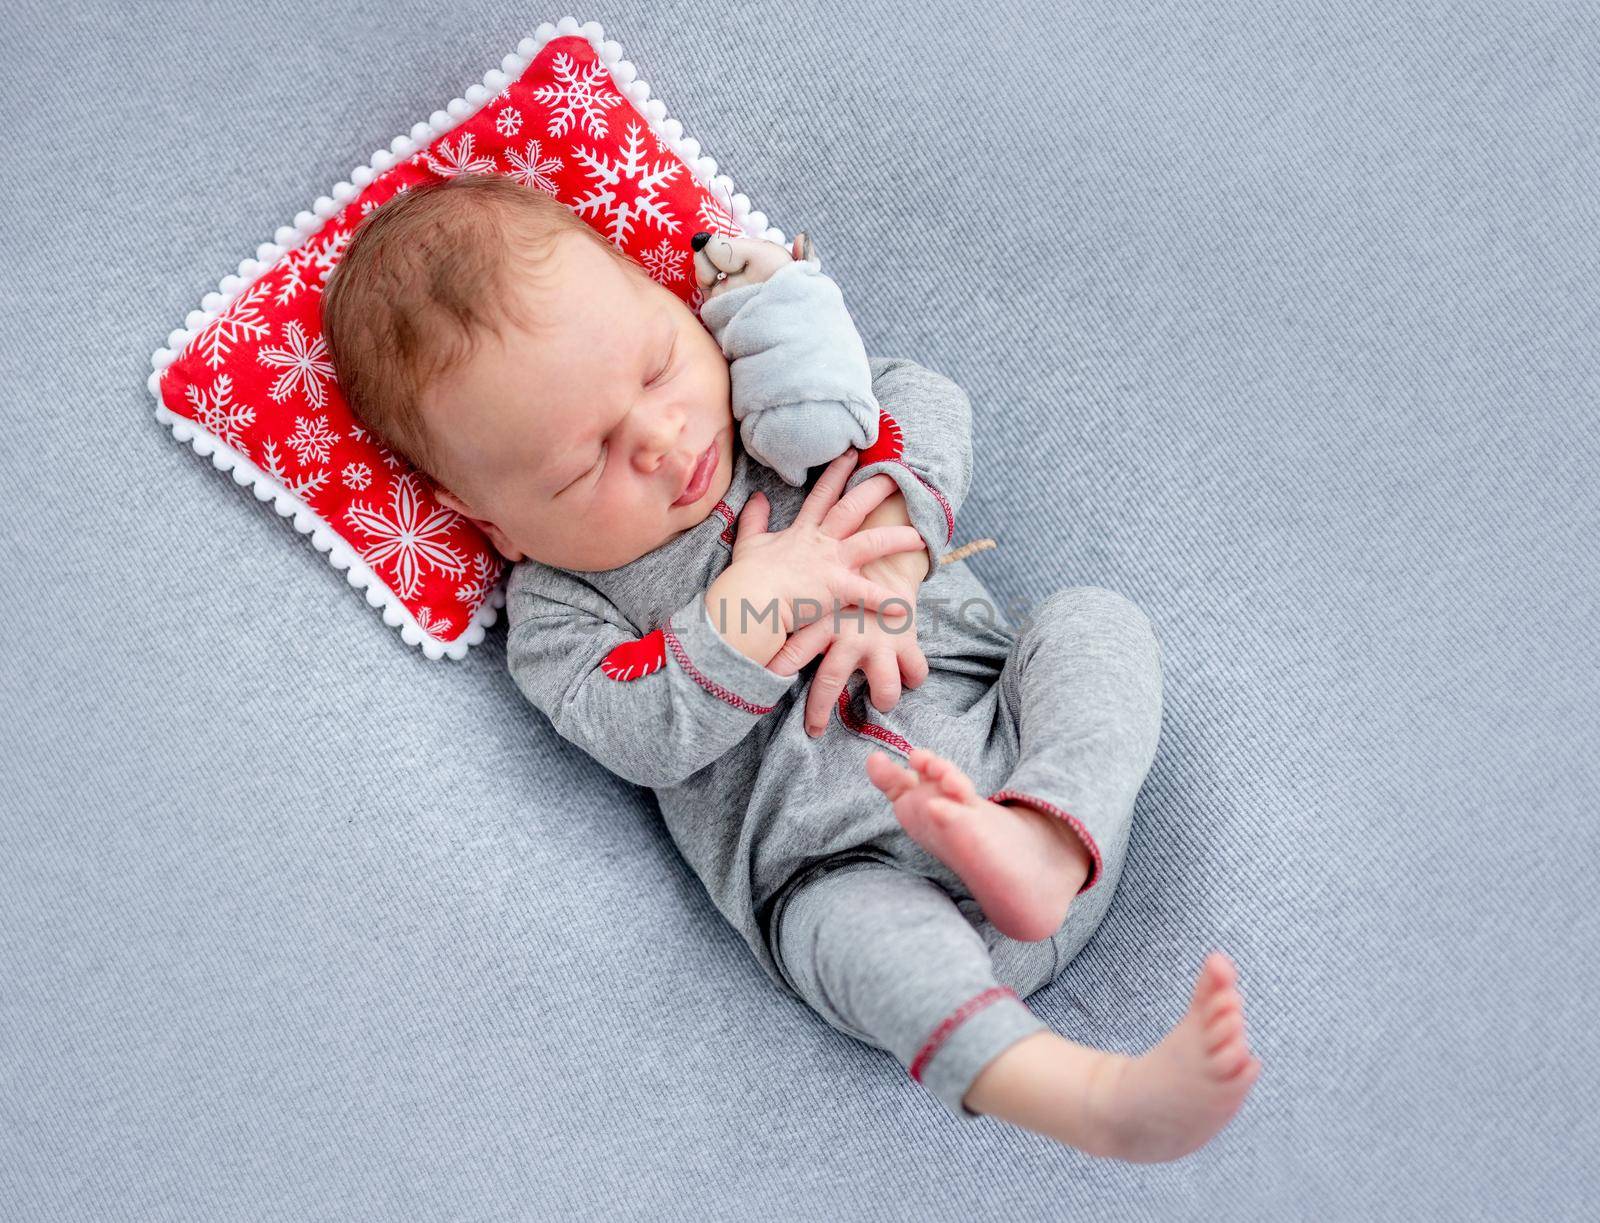 Lovely newborn in sleep suit by tan4ikk1